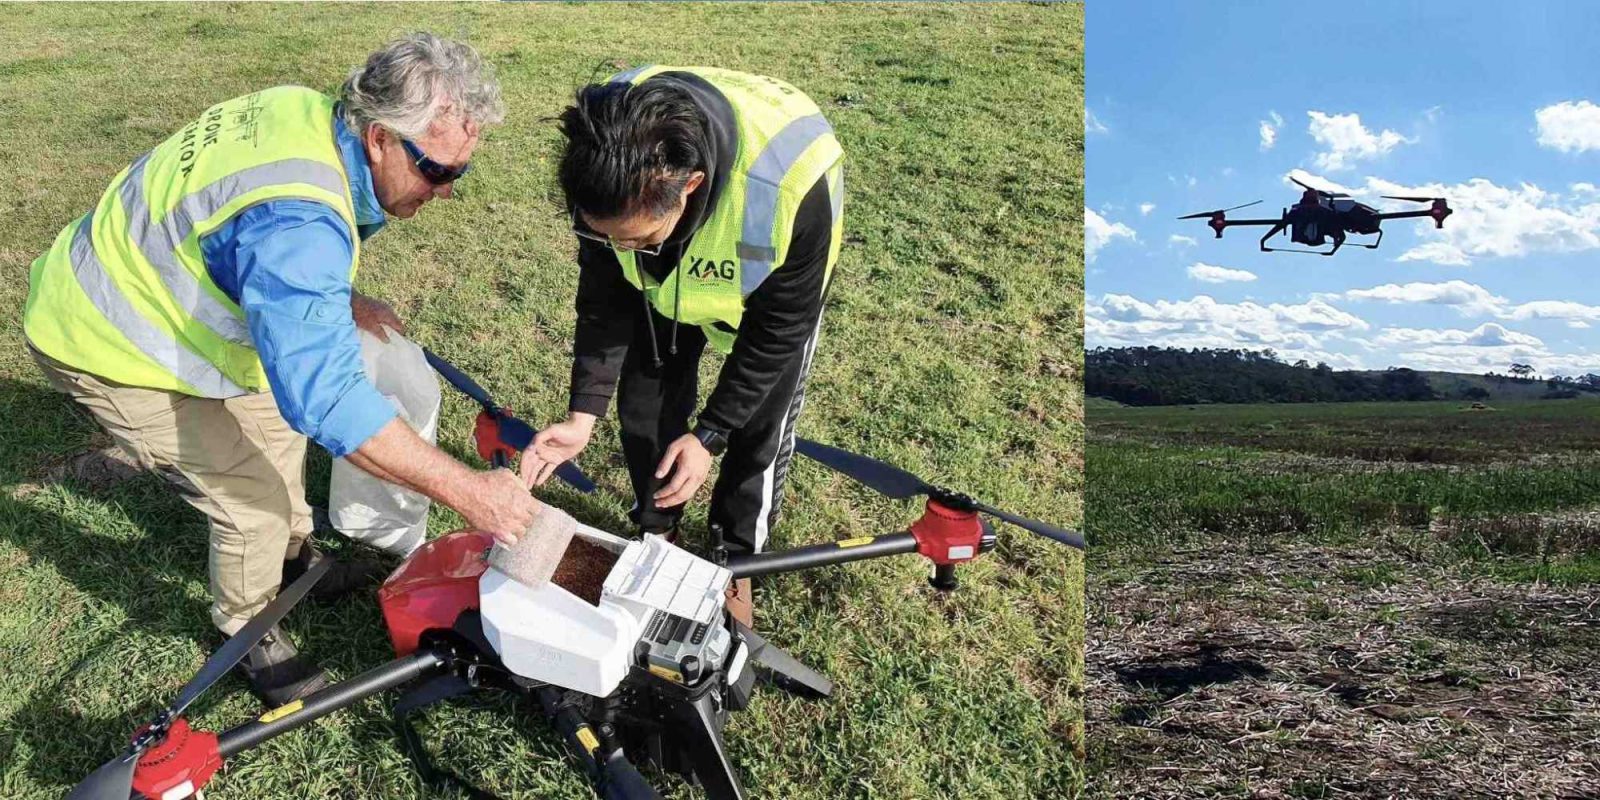 XAG drones Australia bushfire